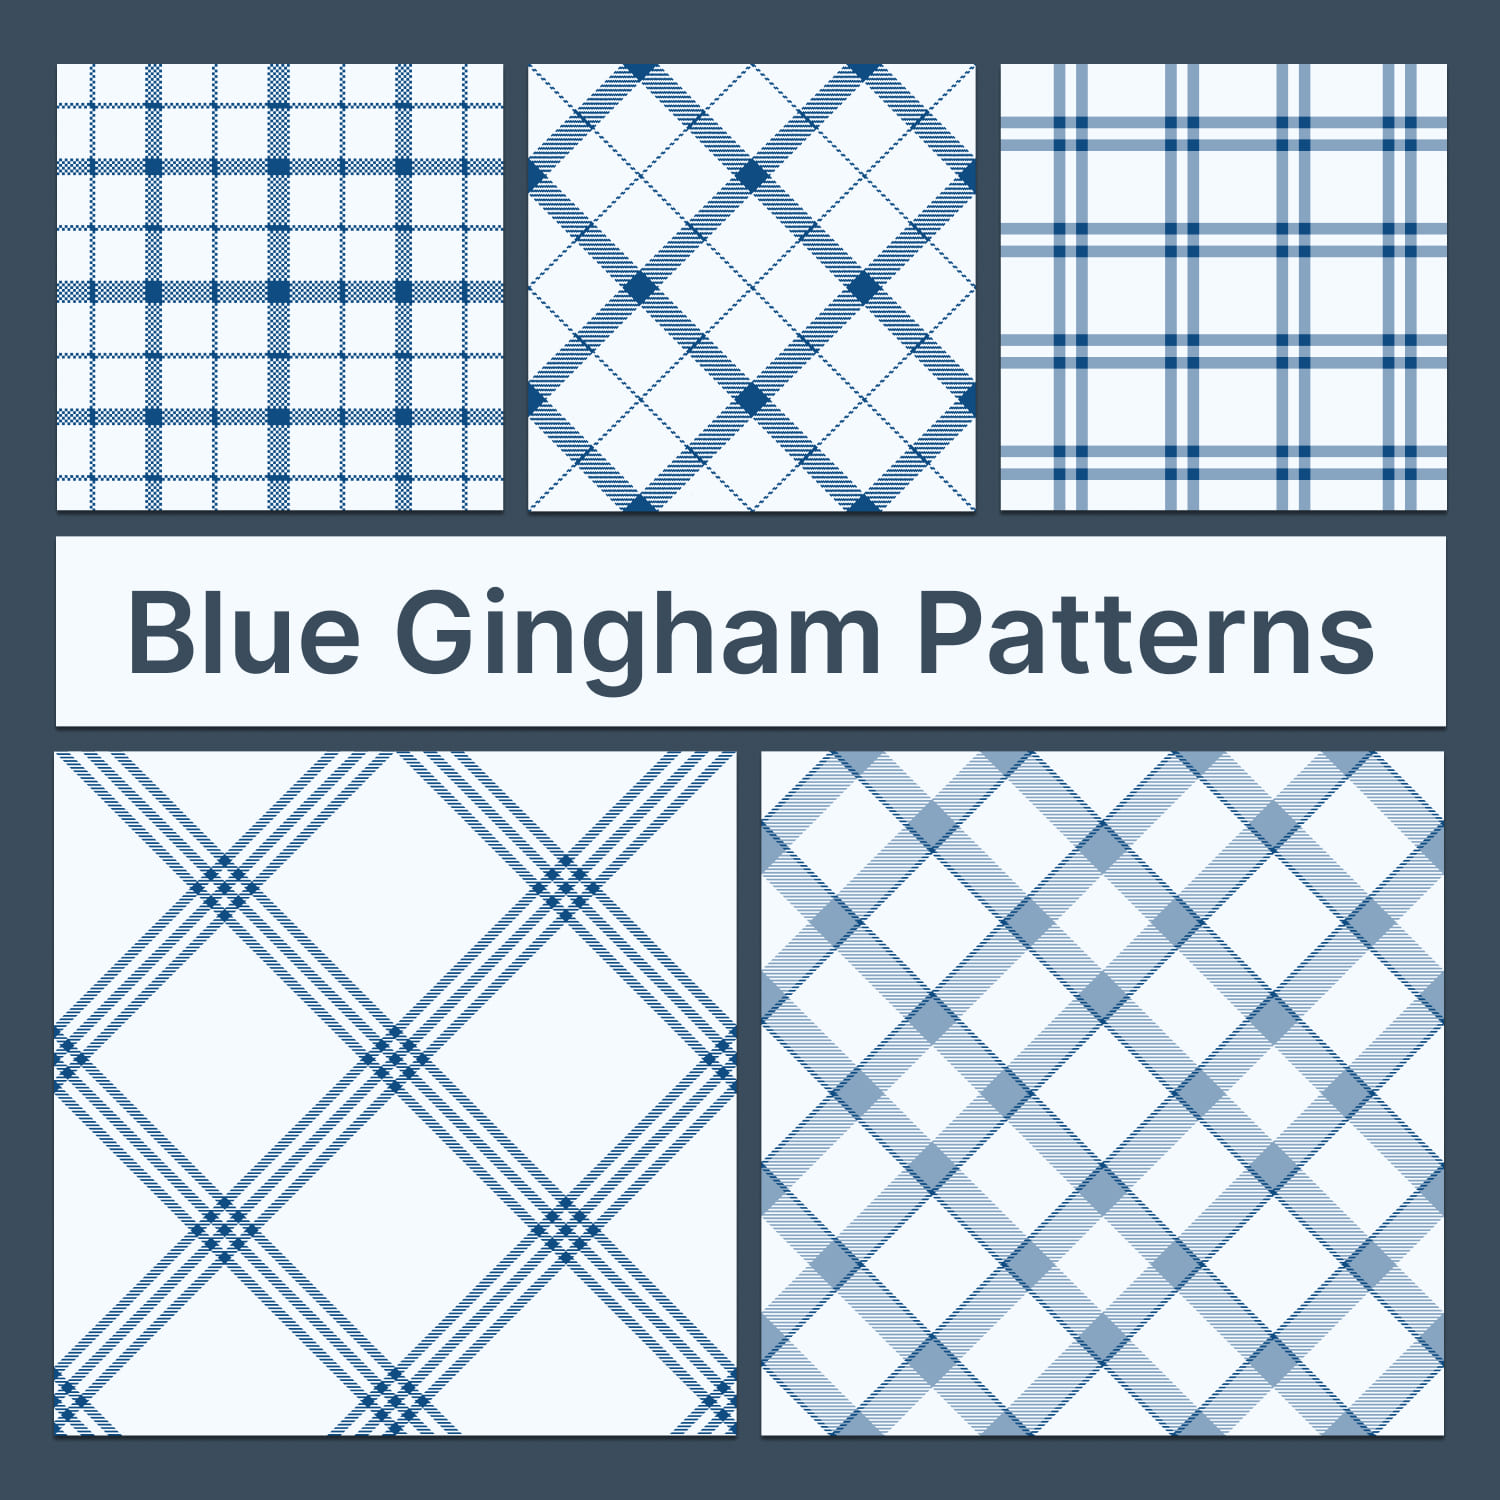 blue gingham patterns v2.